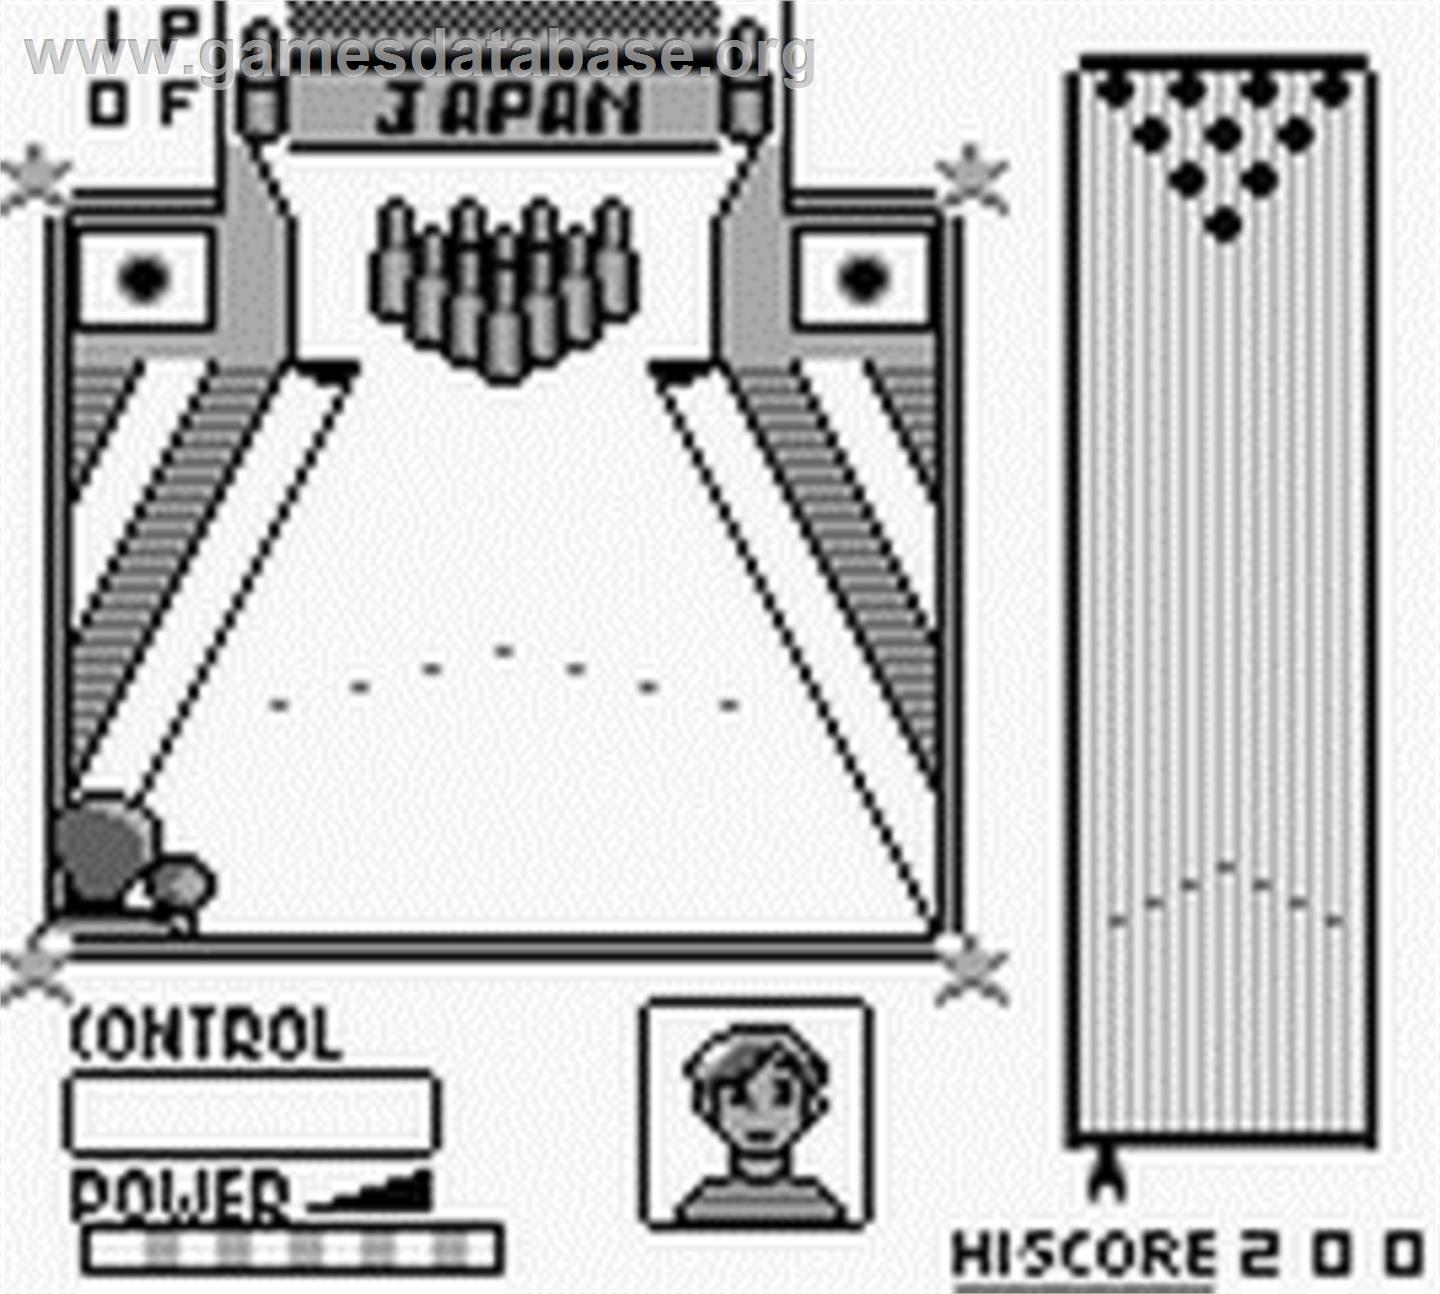 World Bowling - Nintendo Game Boy - Artwork - In Game